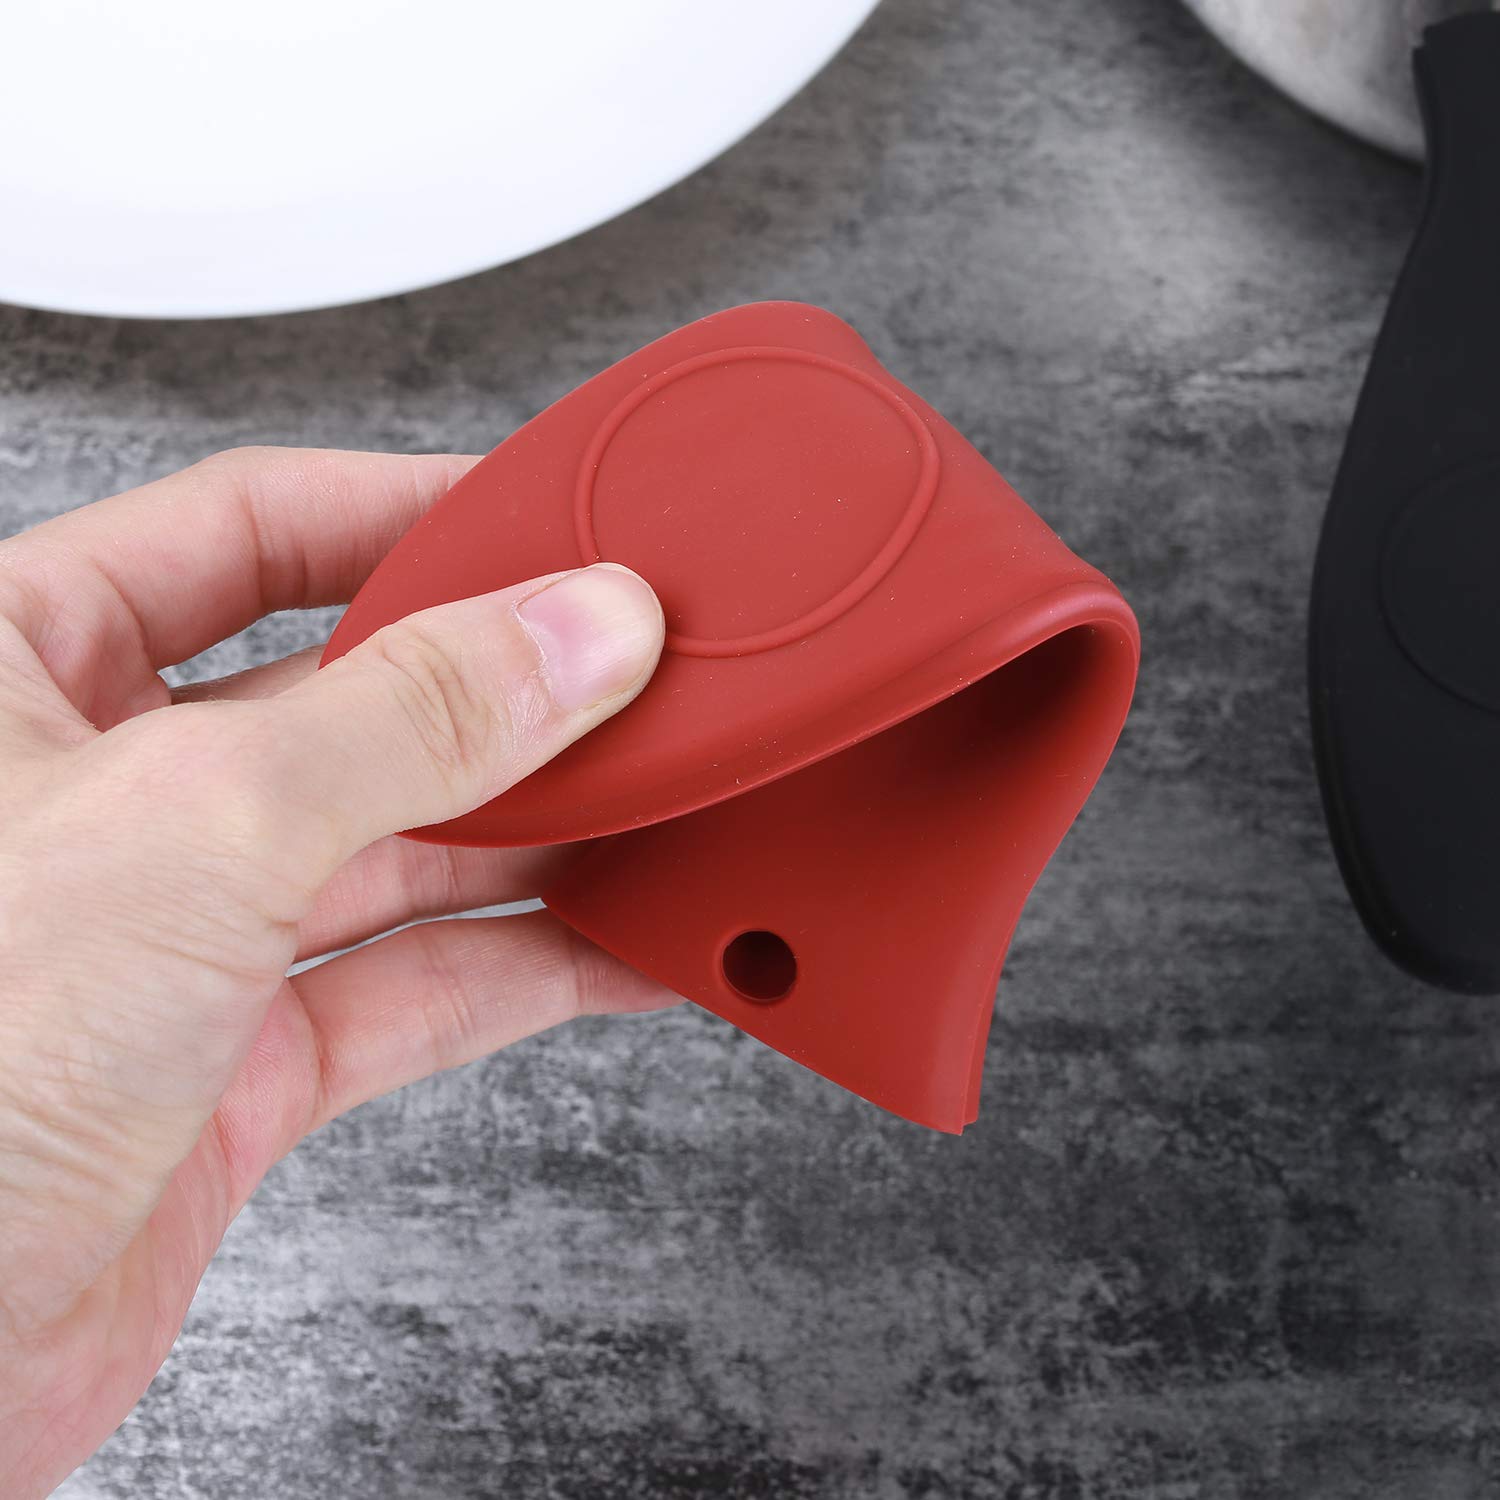 4 Packs Juland Silicone Hot Handle Holder Set Kitchen Heat Resistant Pot Sleeve Grip Handle Cover Potholder - Black & Red